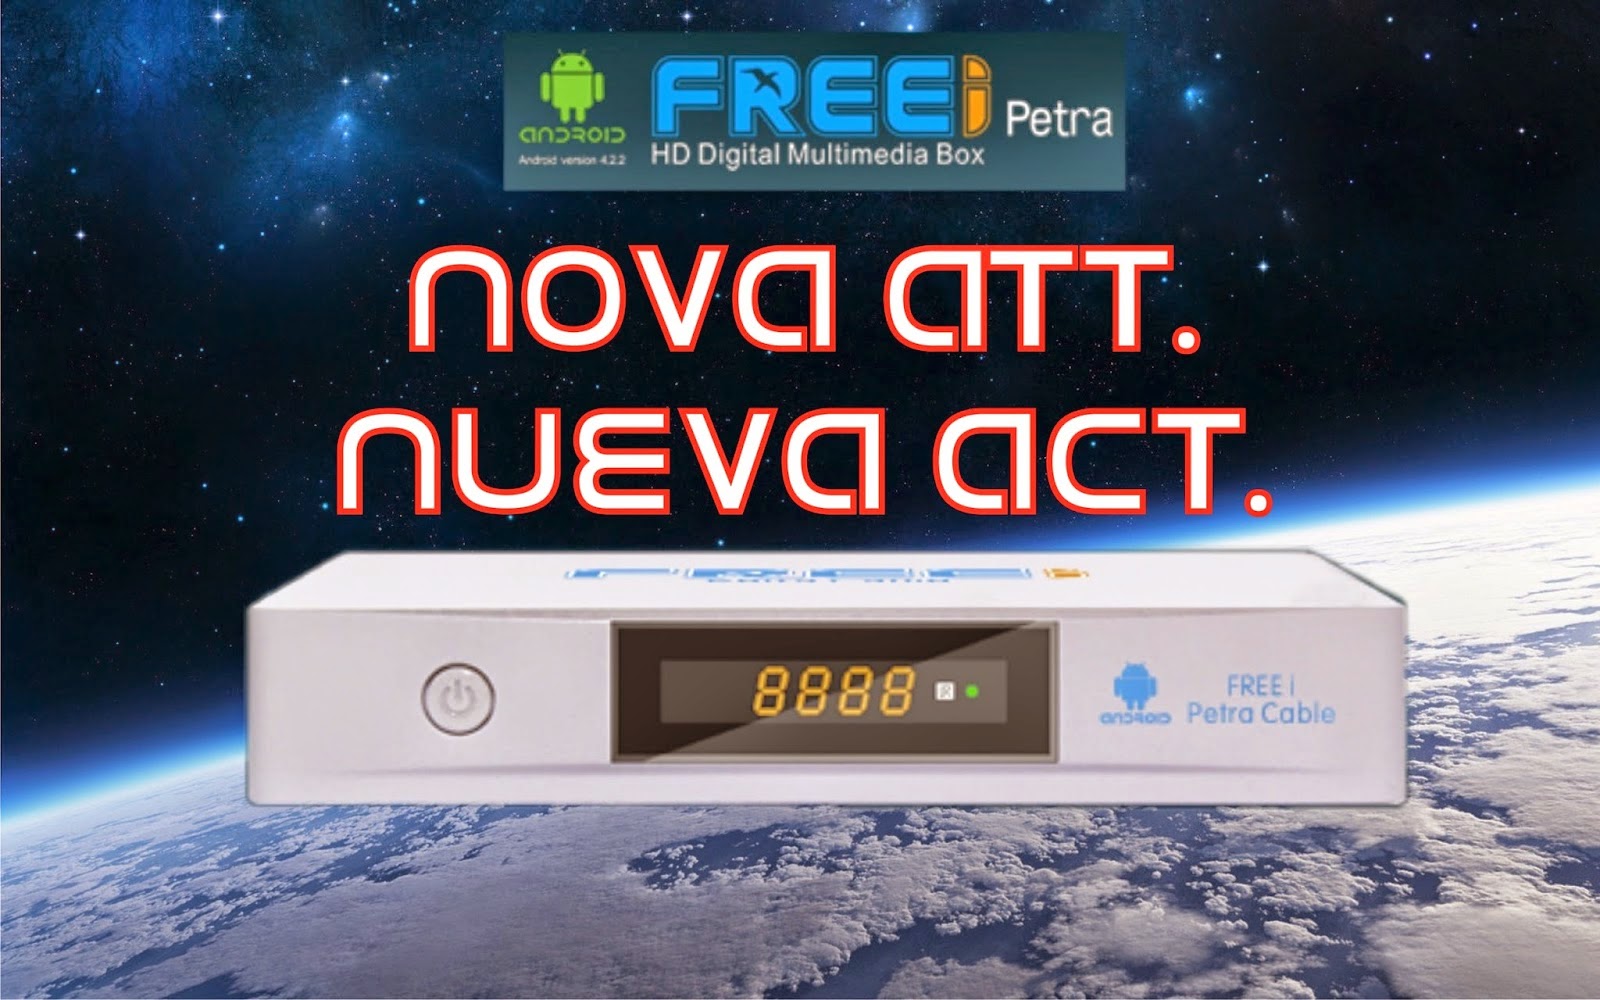 FREEI PETRA CABLE IPTV ANDROID NOVA ATUALIZAÇÃO 1.00.37 - 05/04/2015 